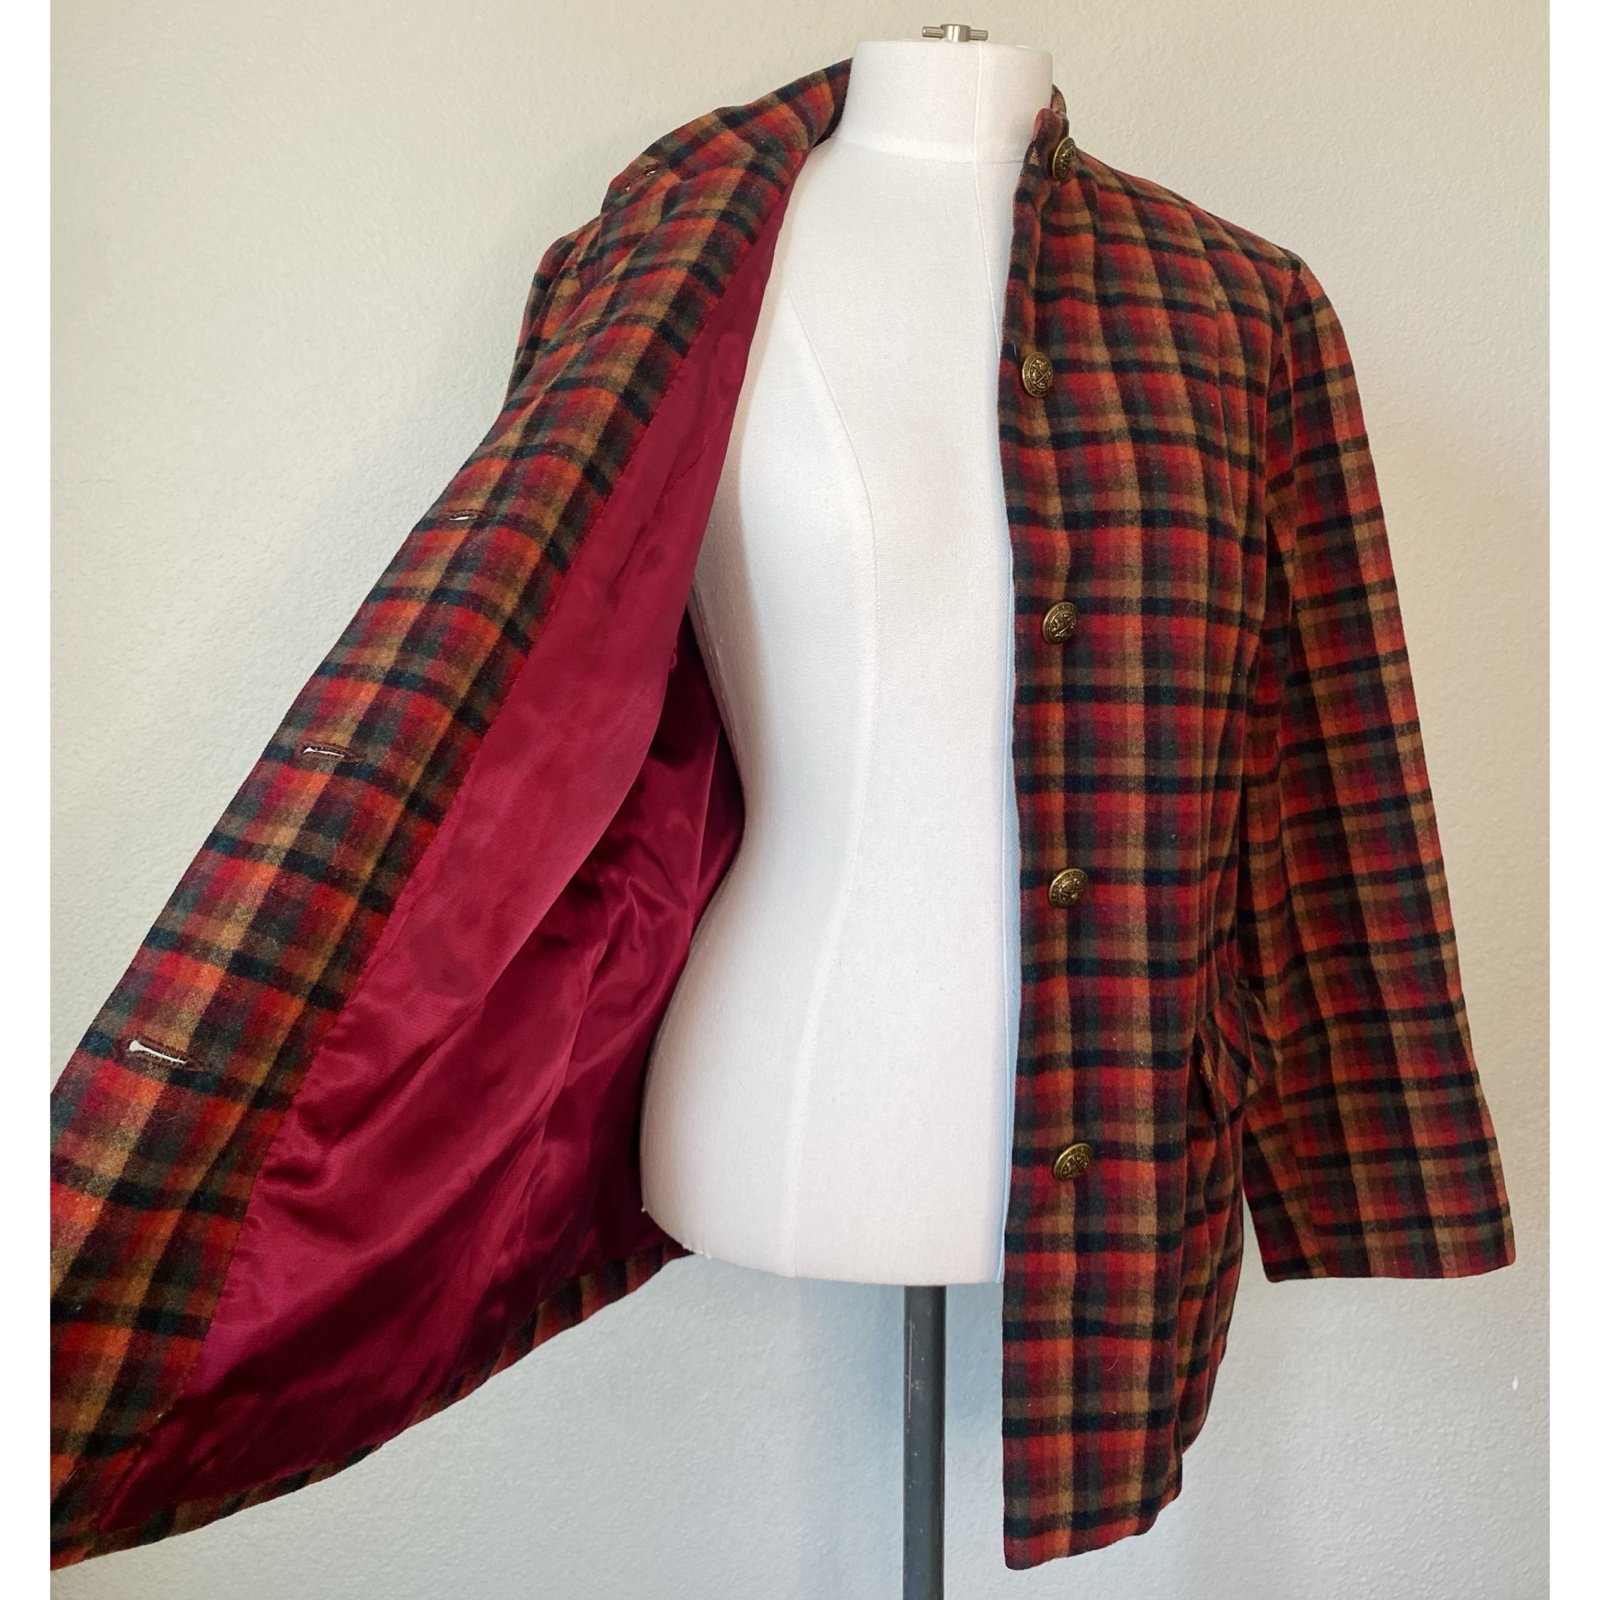 Beautiful Vintage 70’s Colorful Plaid Jacket Coat Blazer PjeuJaGz0 Online Shop